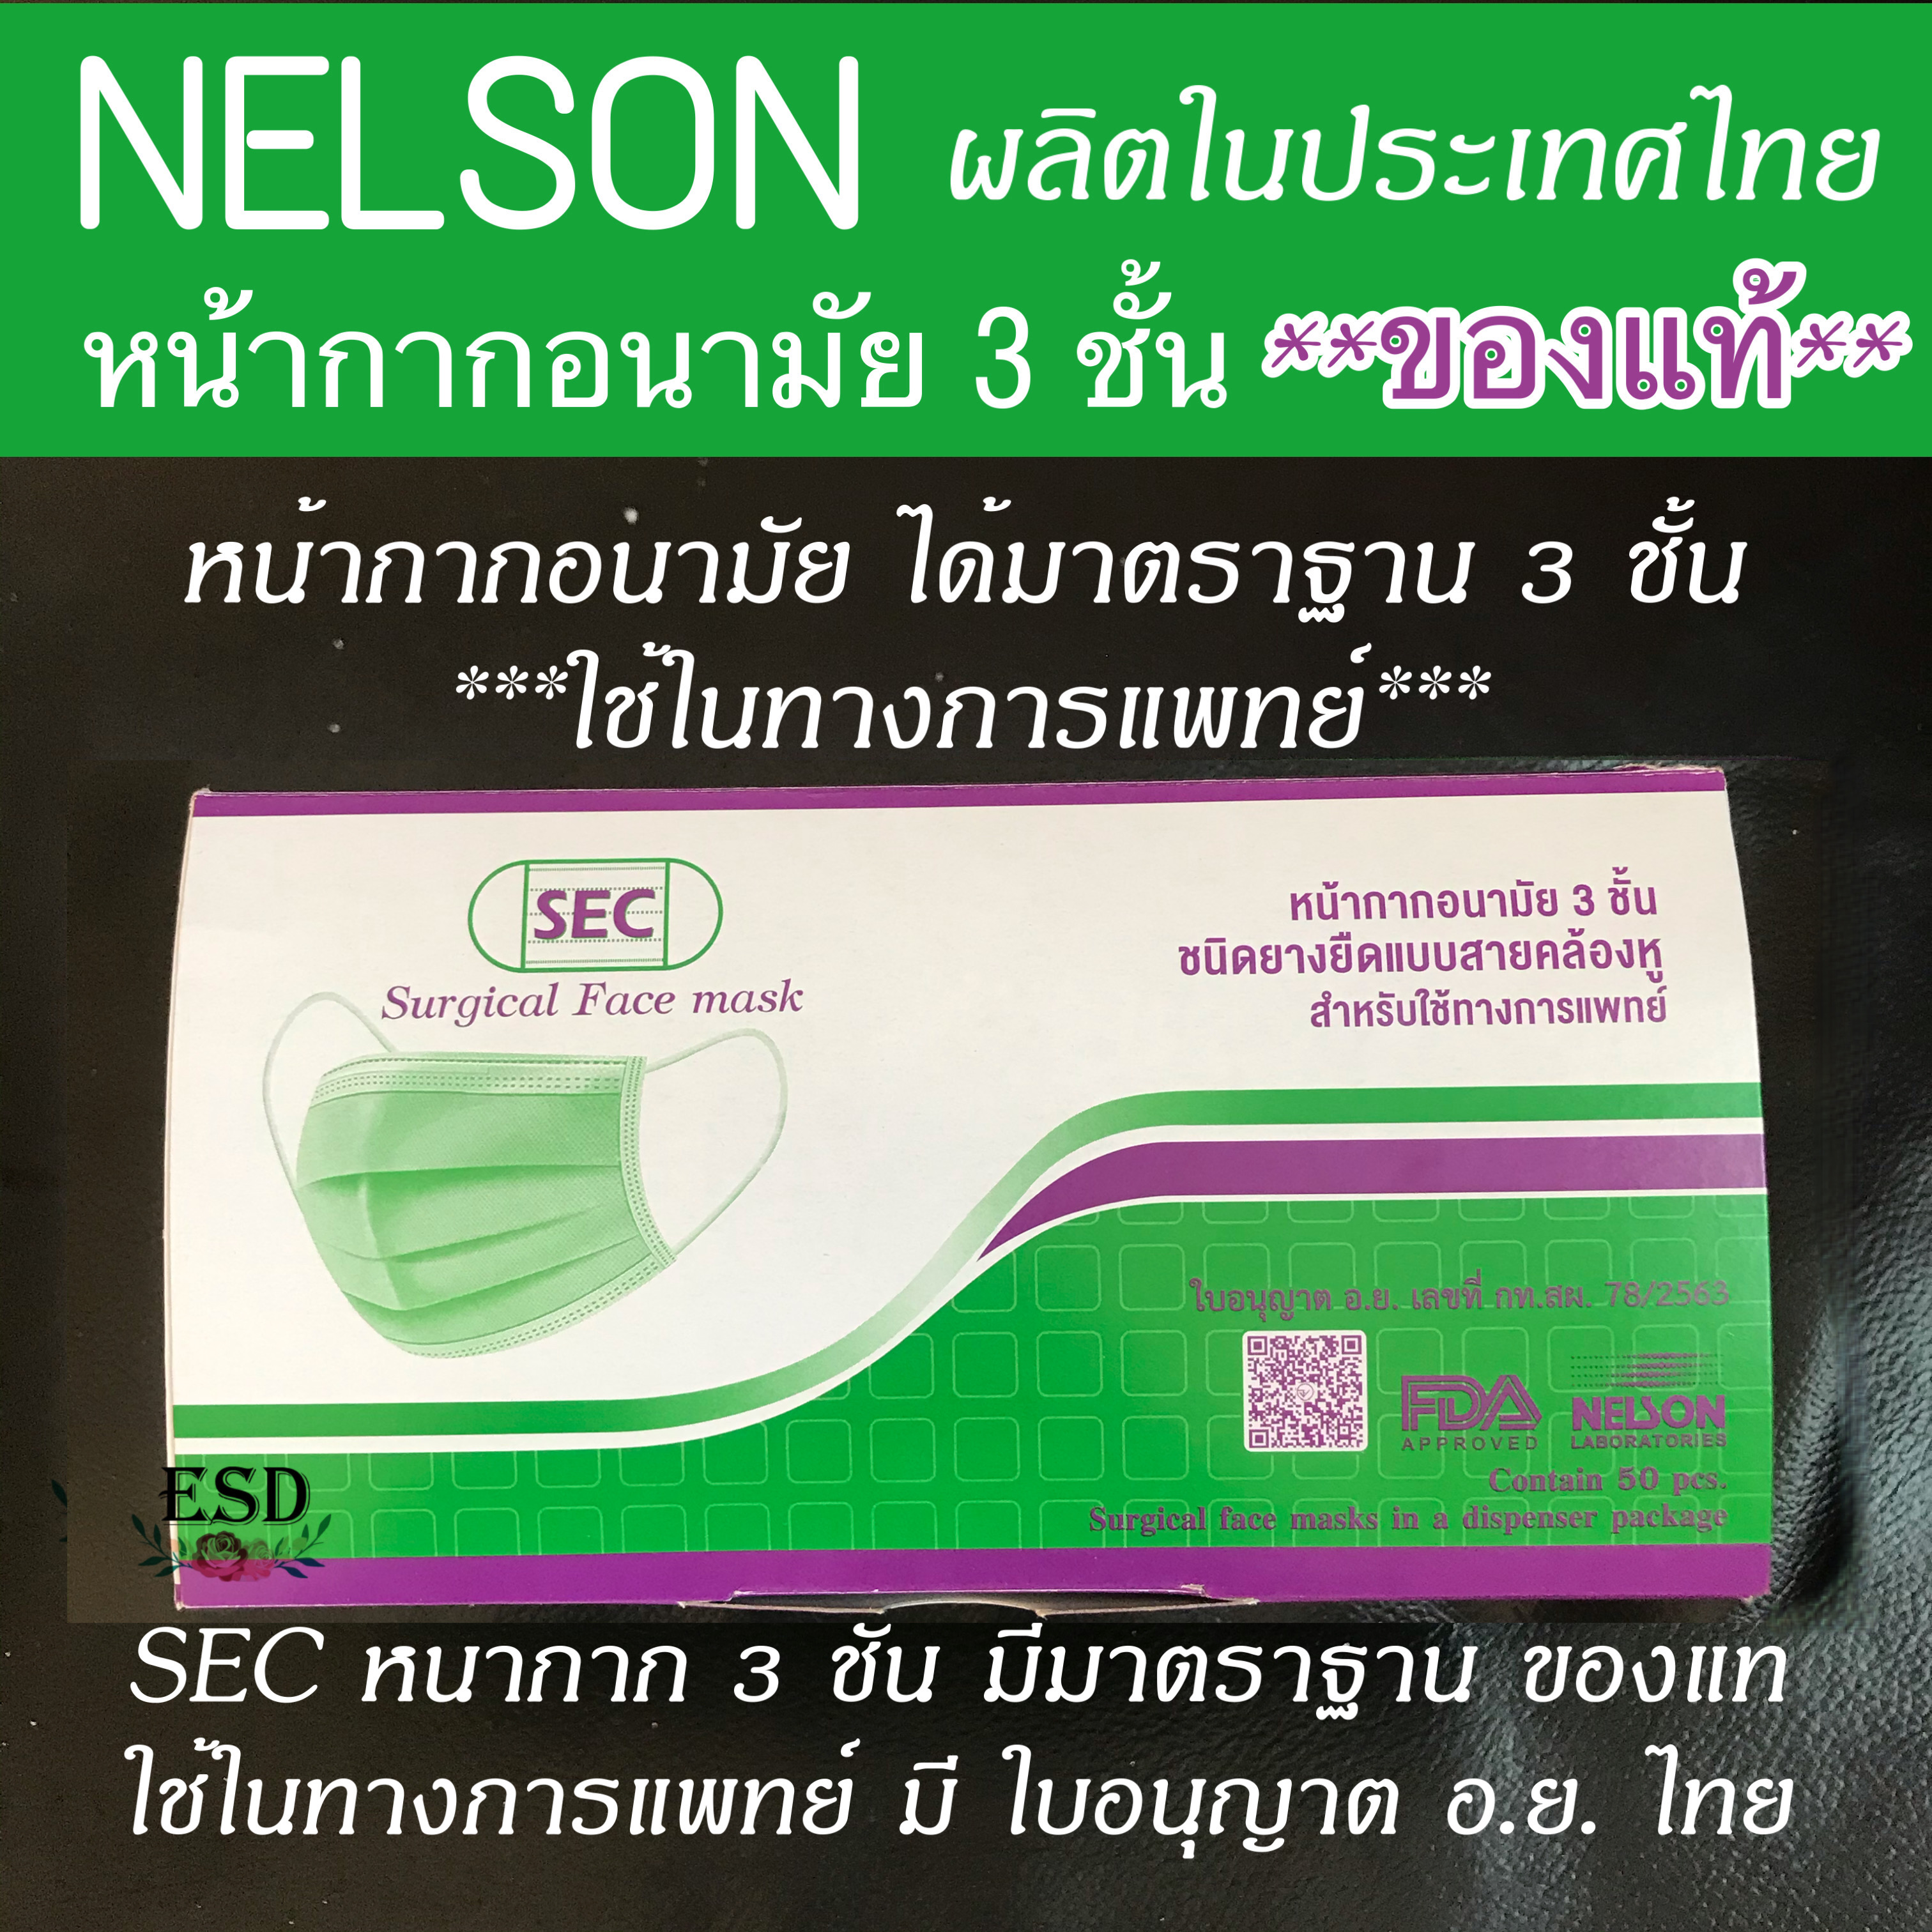 SEC หน้ากากอนามัยทางการแพทย์ หนา 3 ชั้นของแท้ ปั๊ม SEC ผลิตไทย มี อย. + ISO  ผ่านกการรับรอง Nelson จำนวน 50 ชิ้น /กล่อง สีเขียวA2 หรือ A1